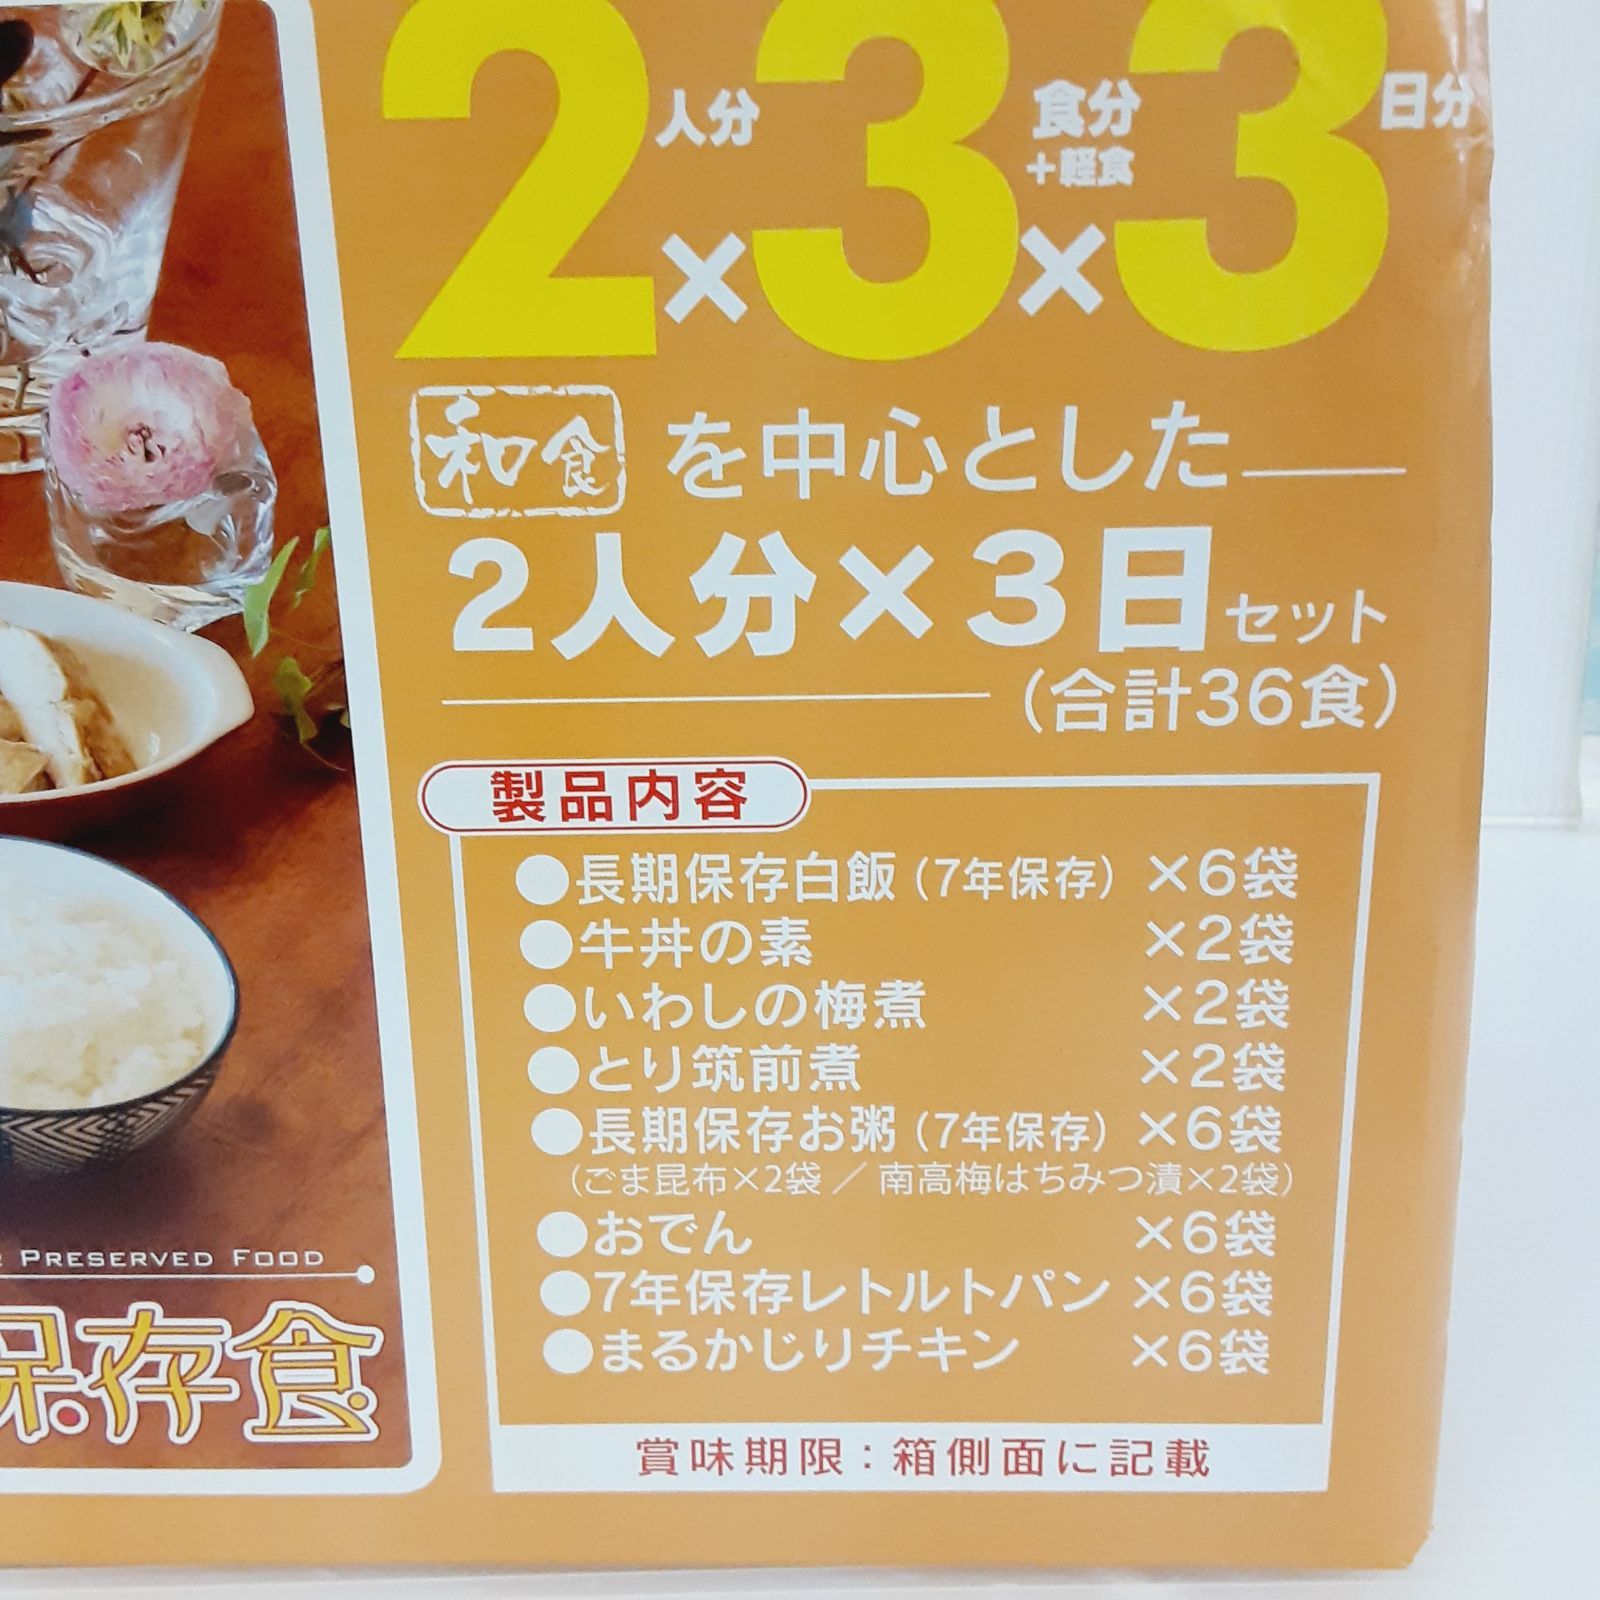 非常食 7年保存 レトルト食品 2人分×3食×3日分 (合計36食) - テント